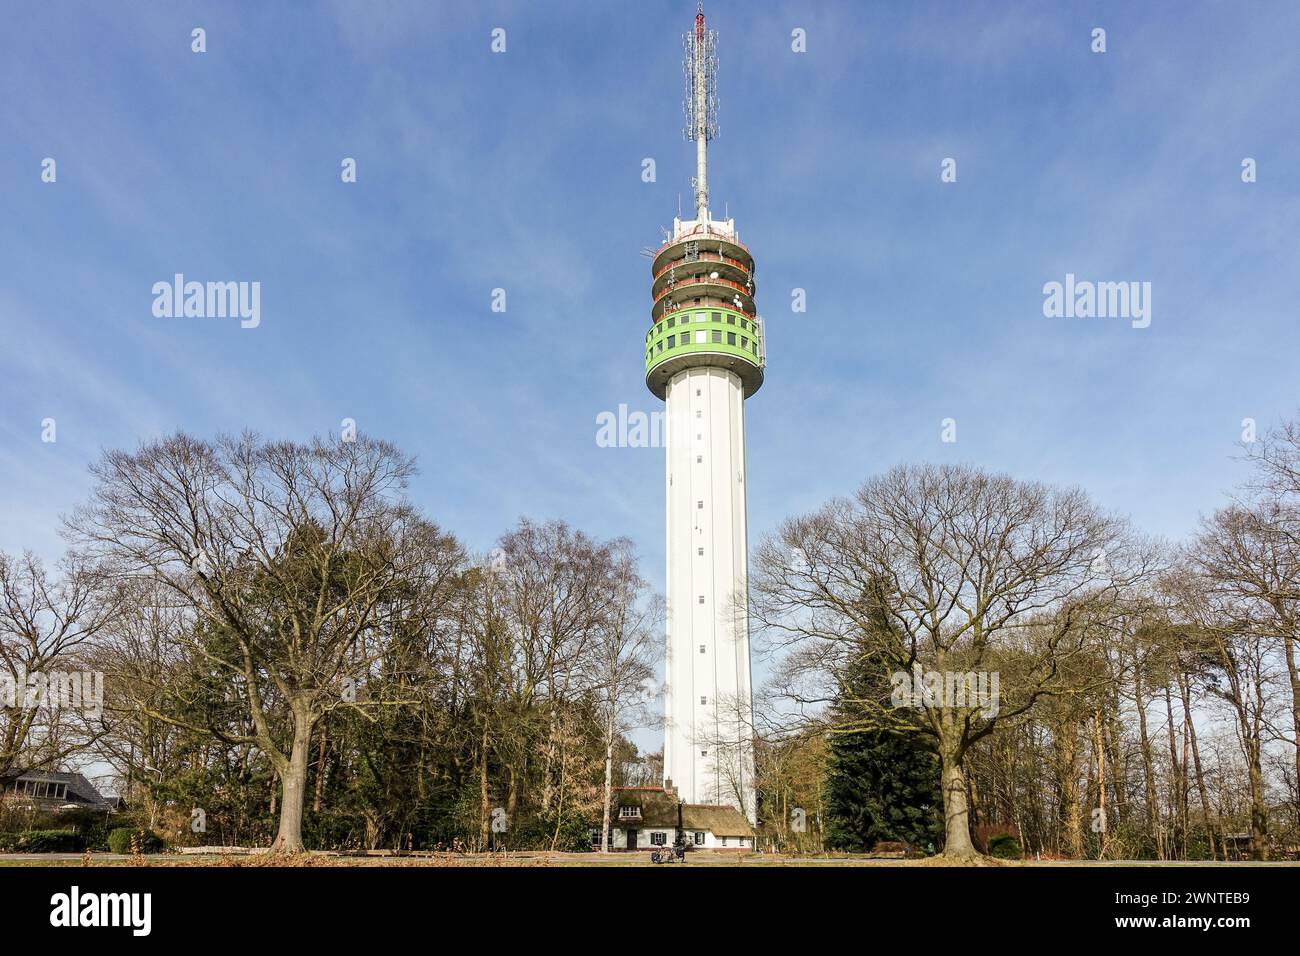 Une tour de télécommunications (Zendmât Markelo, le plus haut bâtiment d'Overijssel) avec des antennes et des antennes dans un ciel bleu clair, entourée d'arbres. Banque D'Images